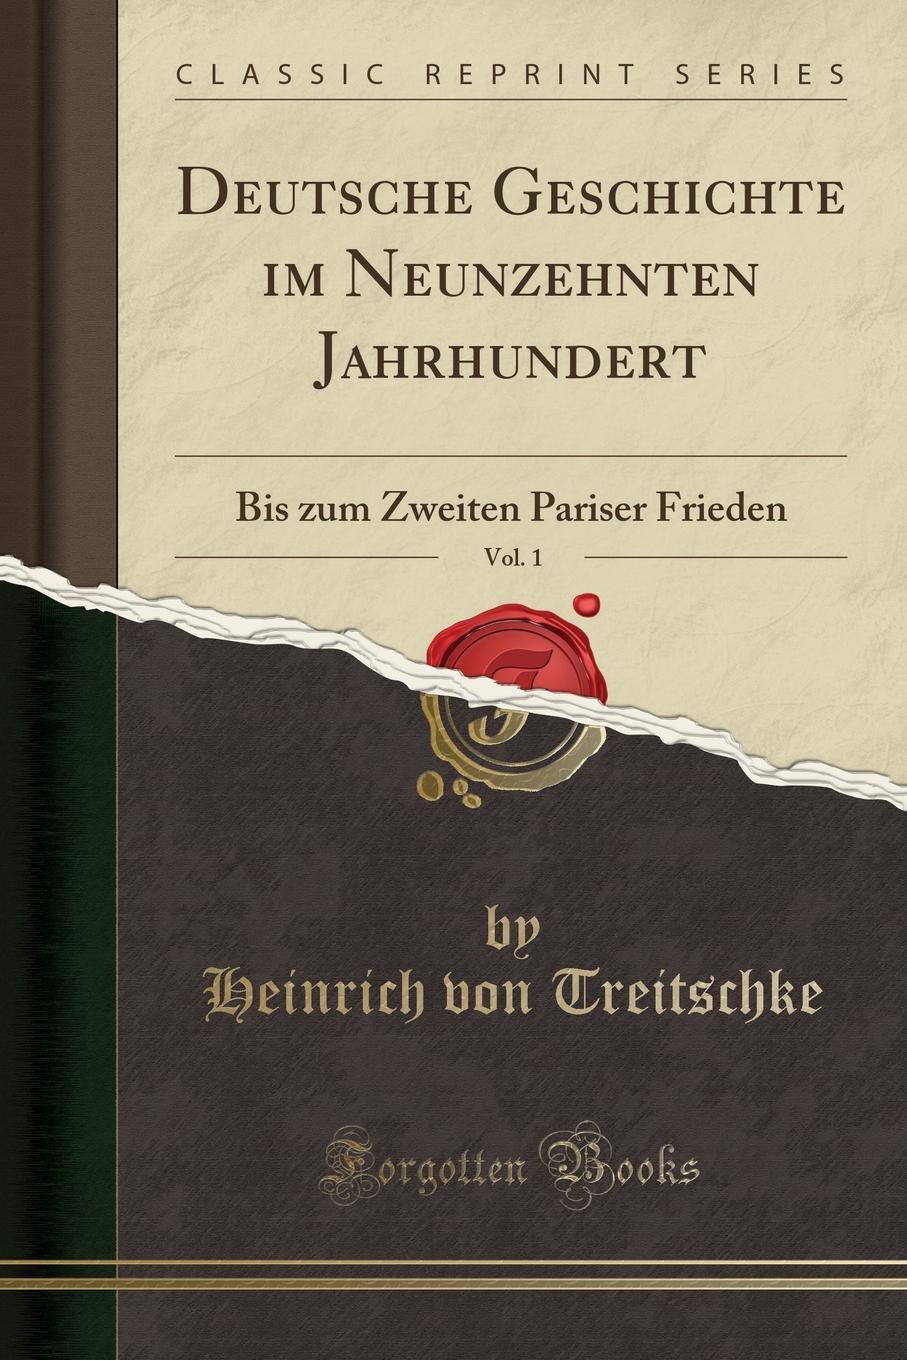 Deutsche Geschichte im Neunzehnten Jahrhundert, Vol. 1. Bis zum Zweiten Pariser Frieden (Classic Reprint)